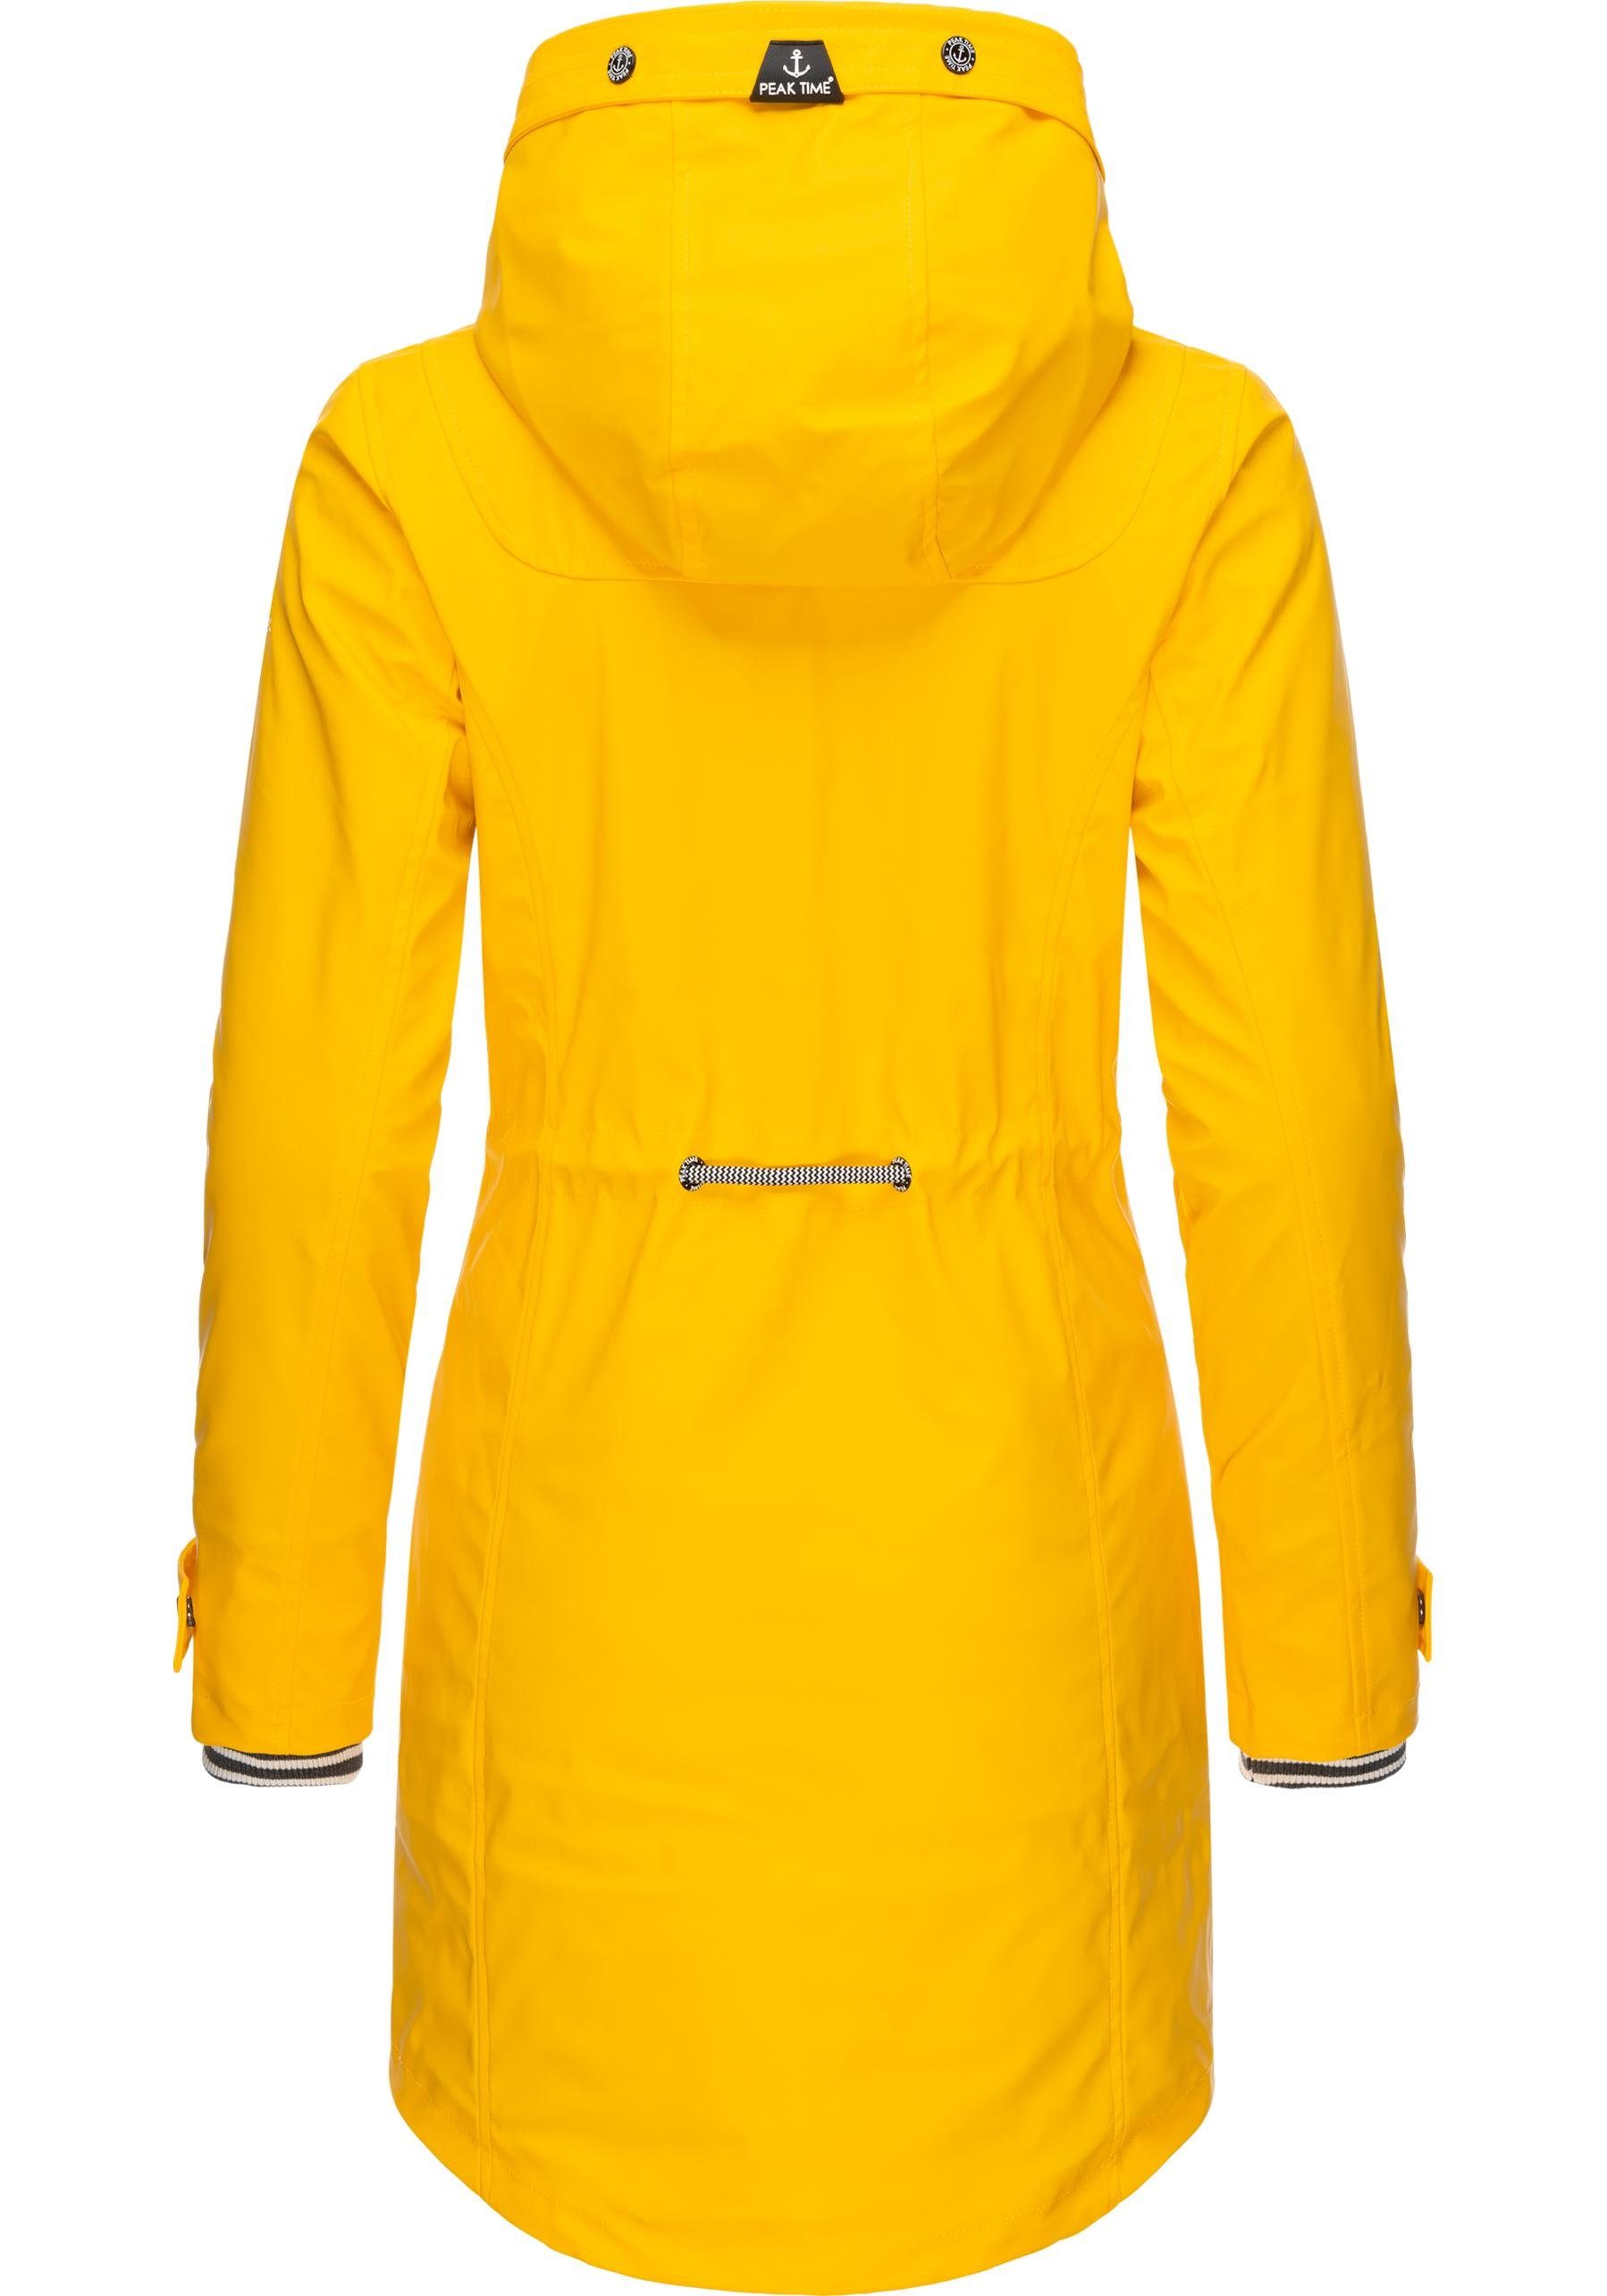 TIME taillierter L60042 für Damen Regenjacke dottergelb PEAK stylisch Regenmantel